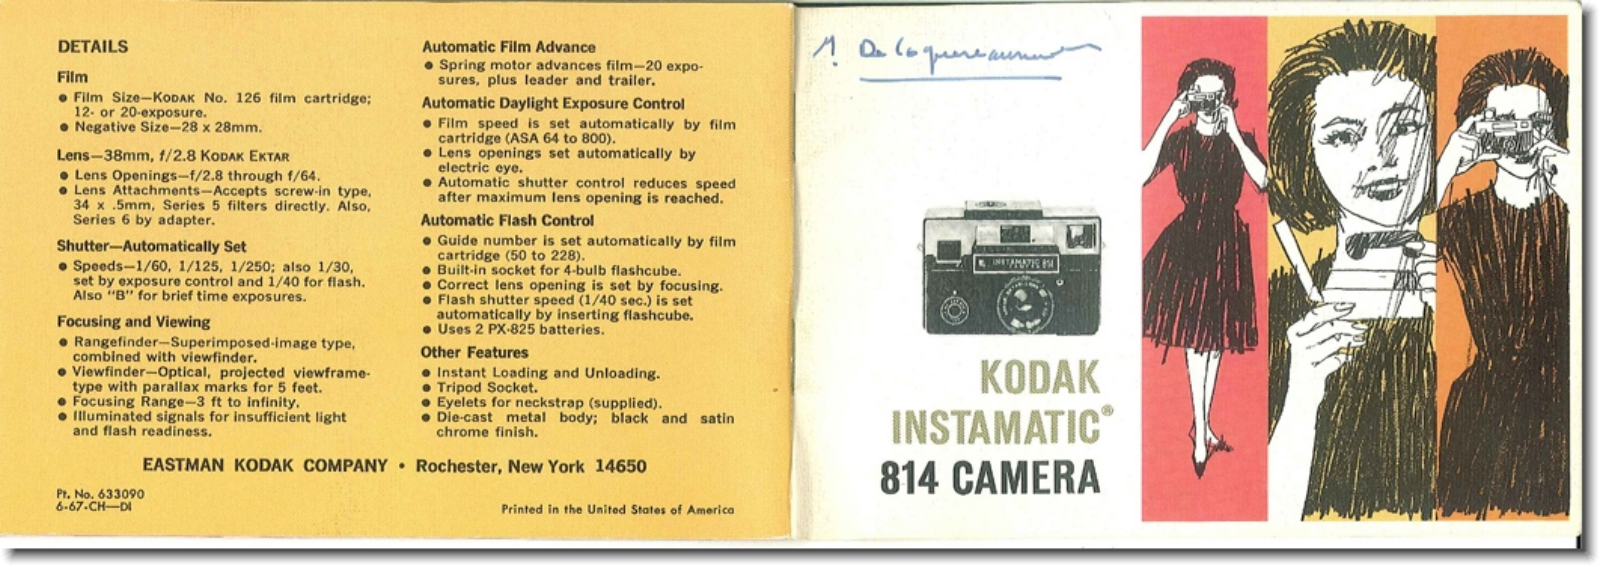 Kodak Instamatic 814 Instruction Manual